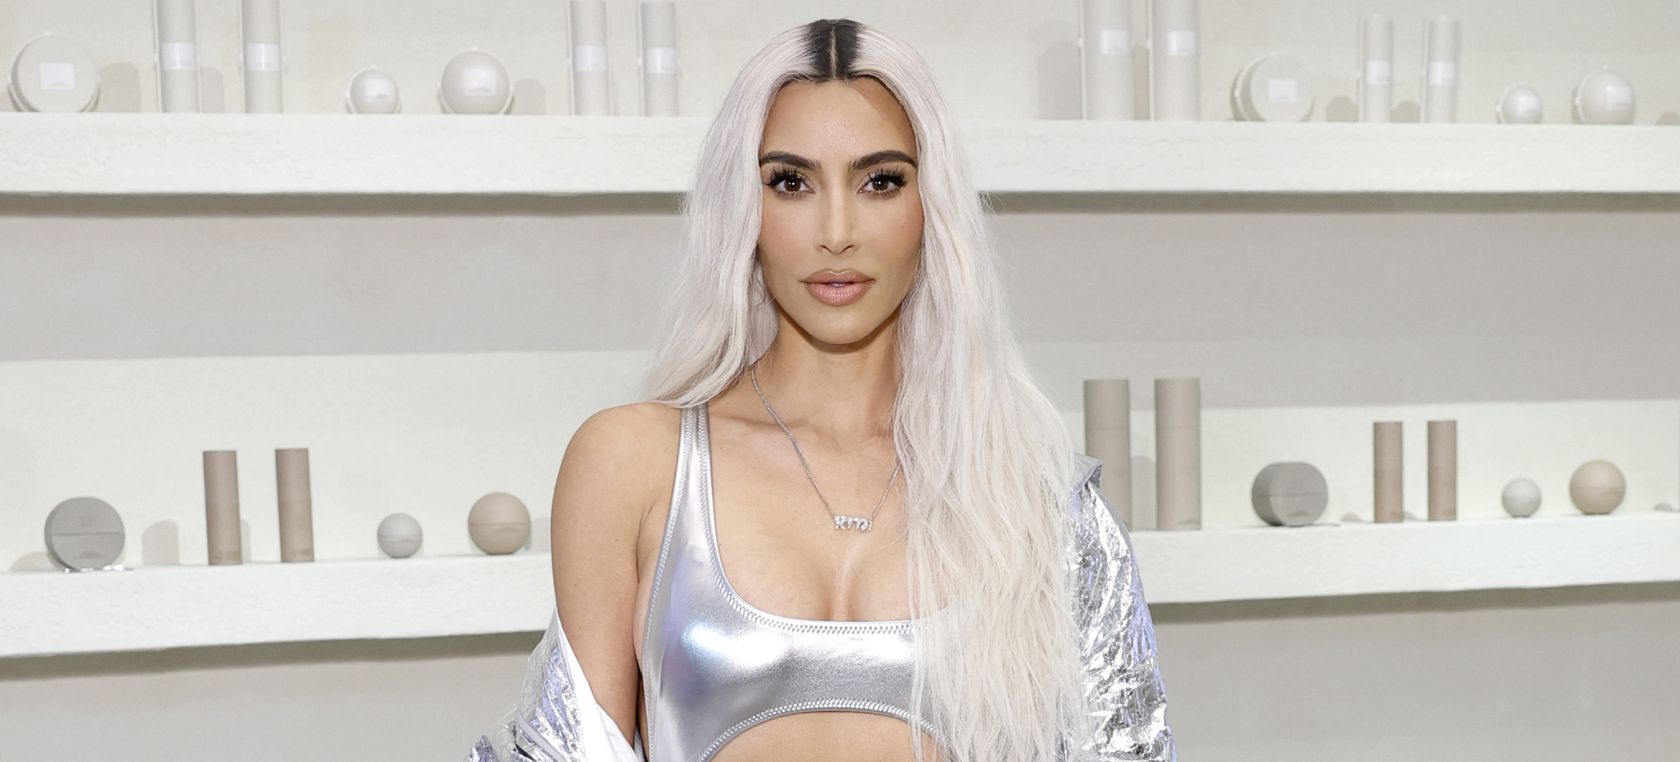 La reacción de Kim Kardashian a la nueva campaña de Baleciaga: “Estoy reevaluando mi relación con la marca”